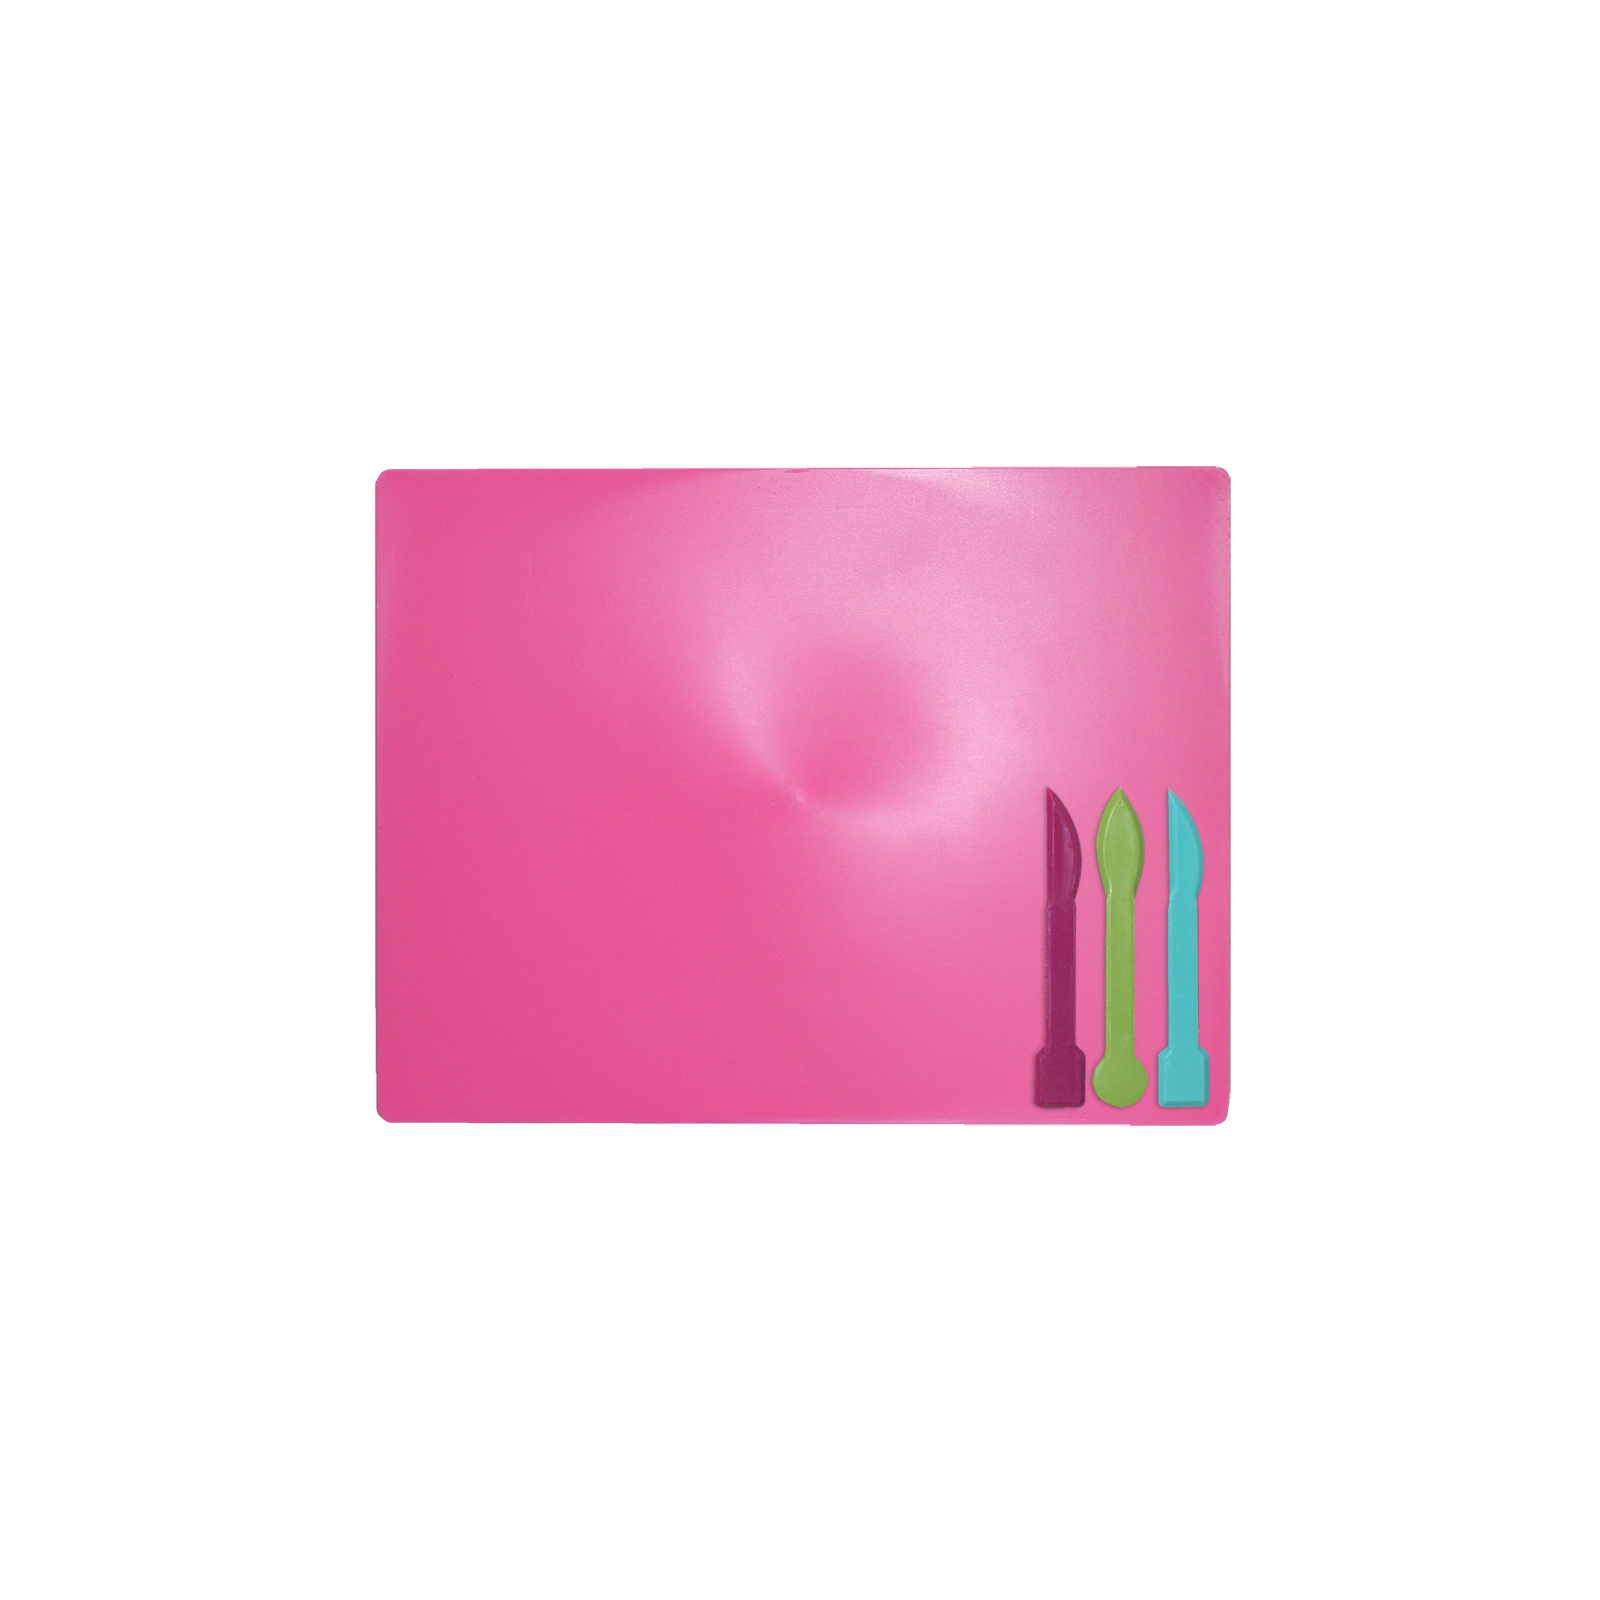 Доска для пластилина ZiBi + 3 стека для лепки, розовая (ZB.6910-10)